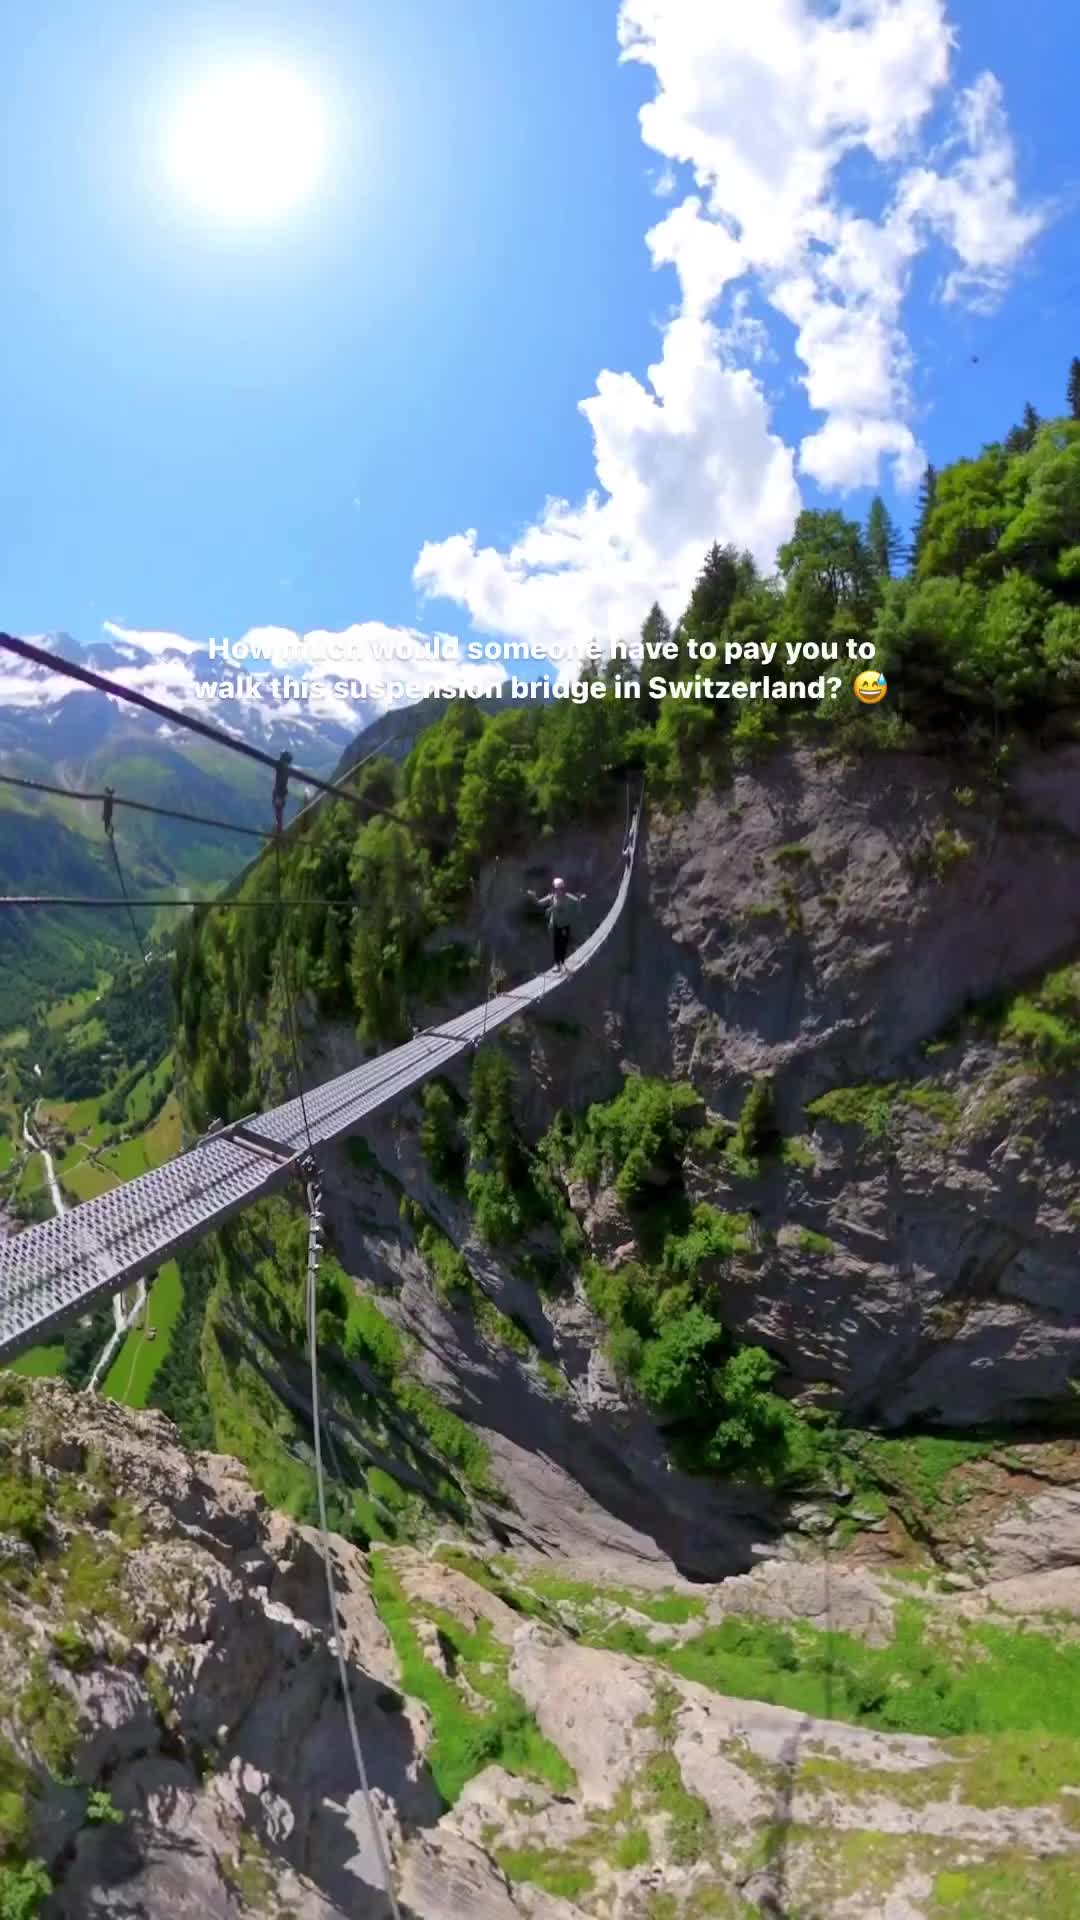 Thrilling Walk on Nepal Suspension Bridge in Switzerland